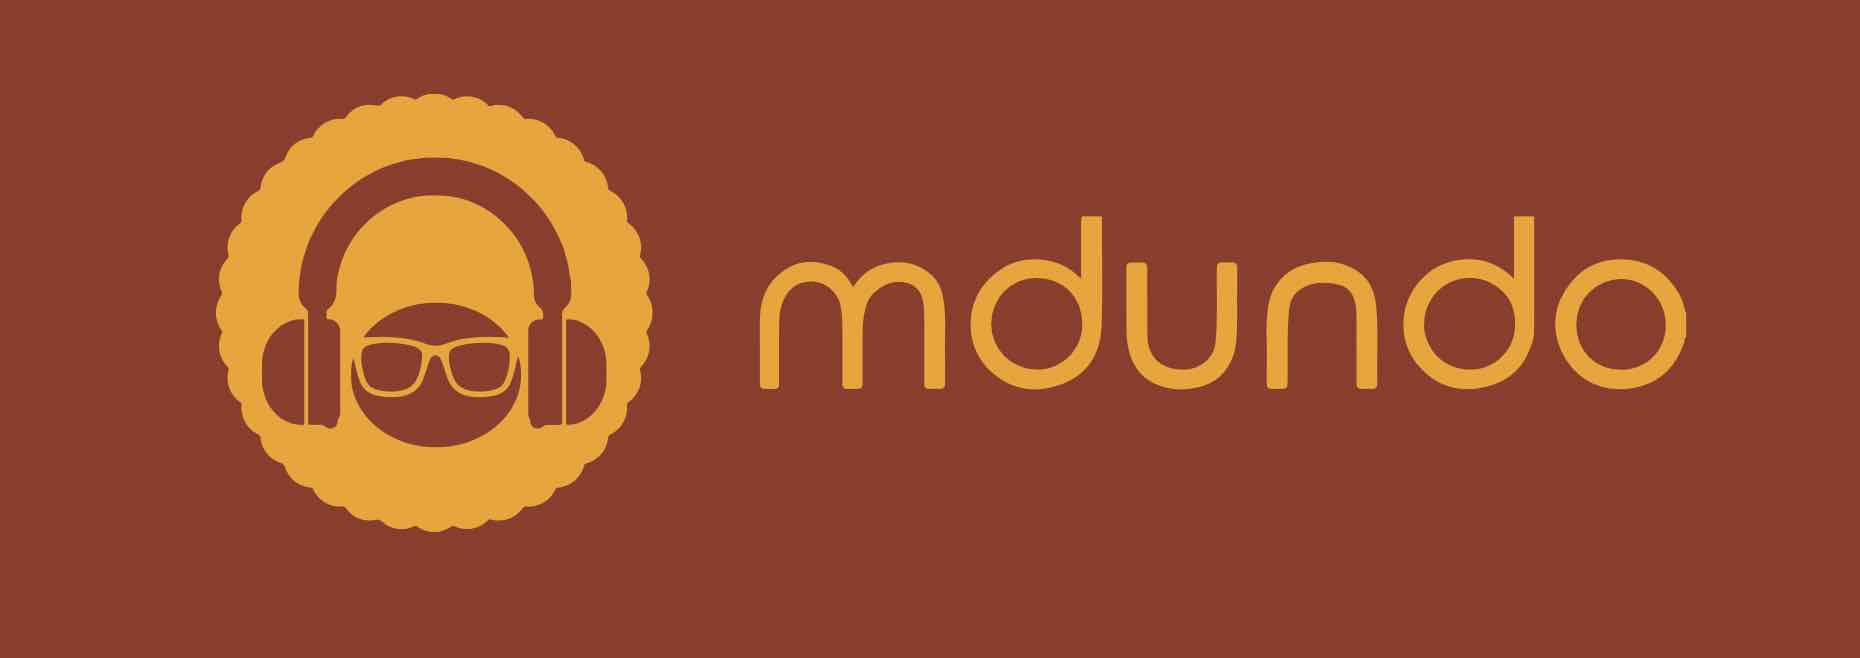 mdundo.com